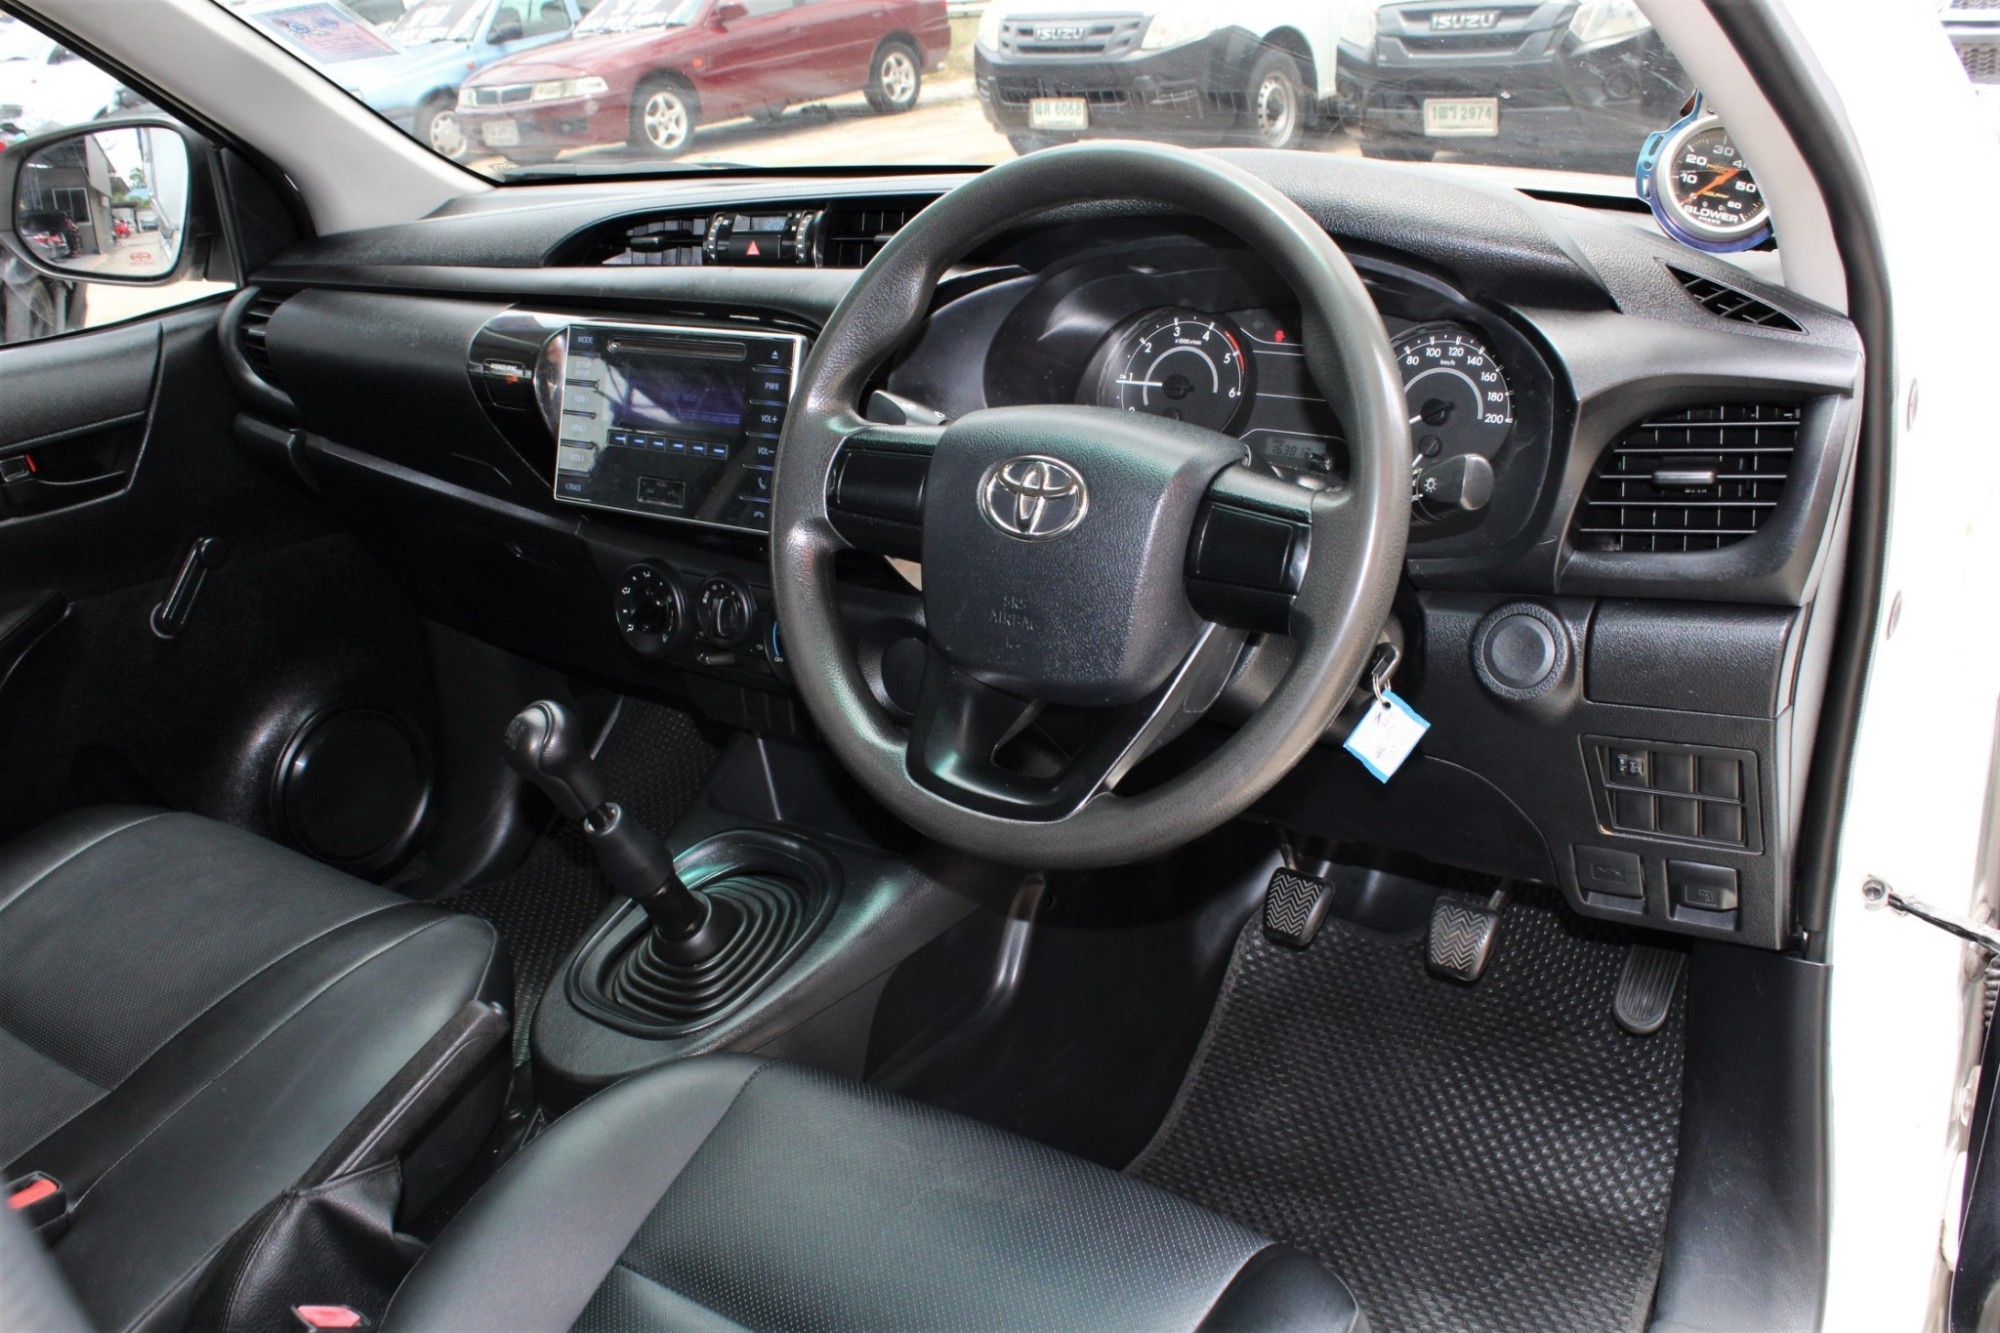 2016 Toyota Hilux Revo 2.4 J M/T สีขาว เกียร์ธรรมดา พร้อมหลังคานั่งสองแถวของใหม่ เหมาะเอาไปรับส่งคนงาน จัดได้ 390000 บาท